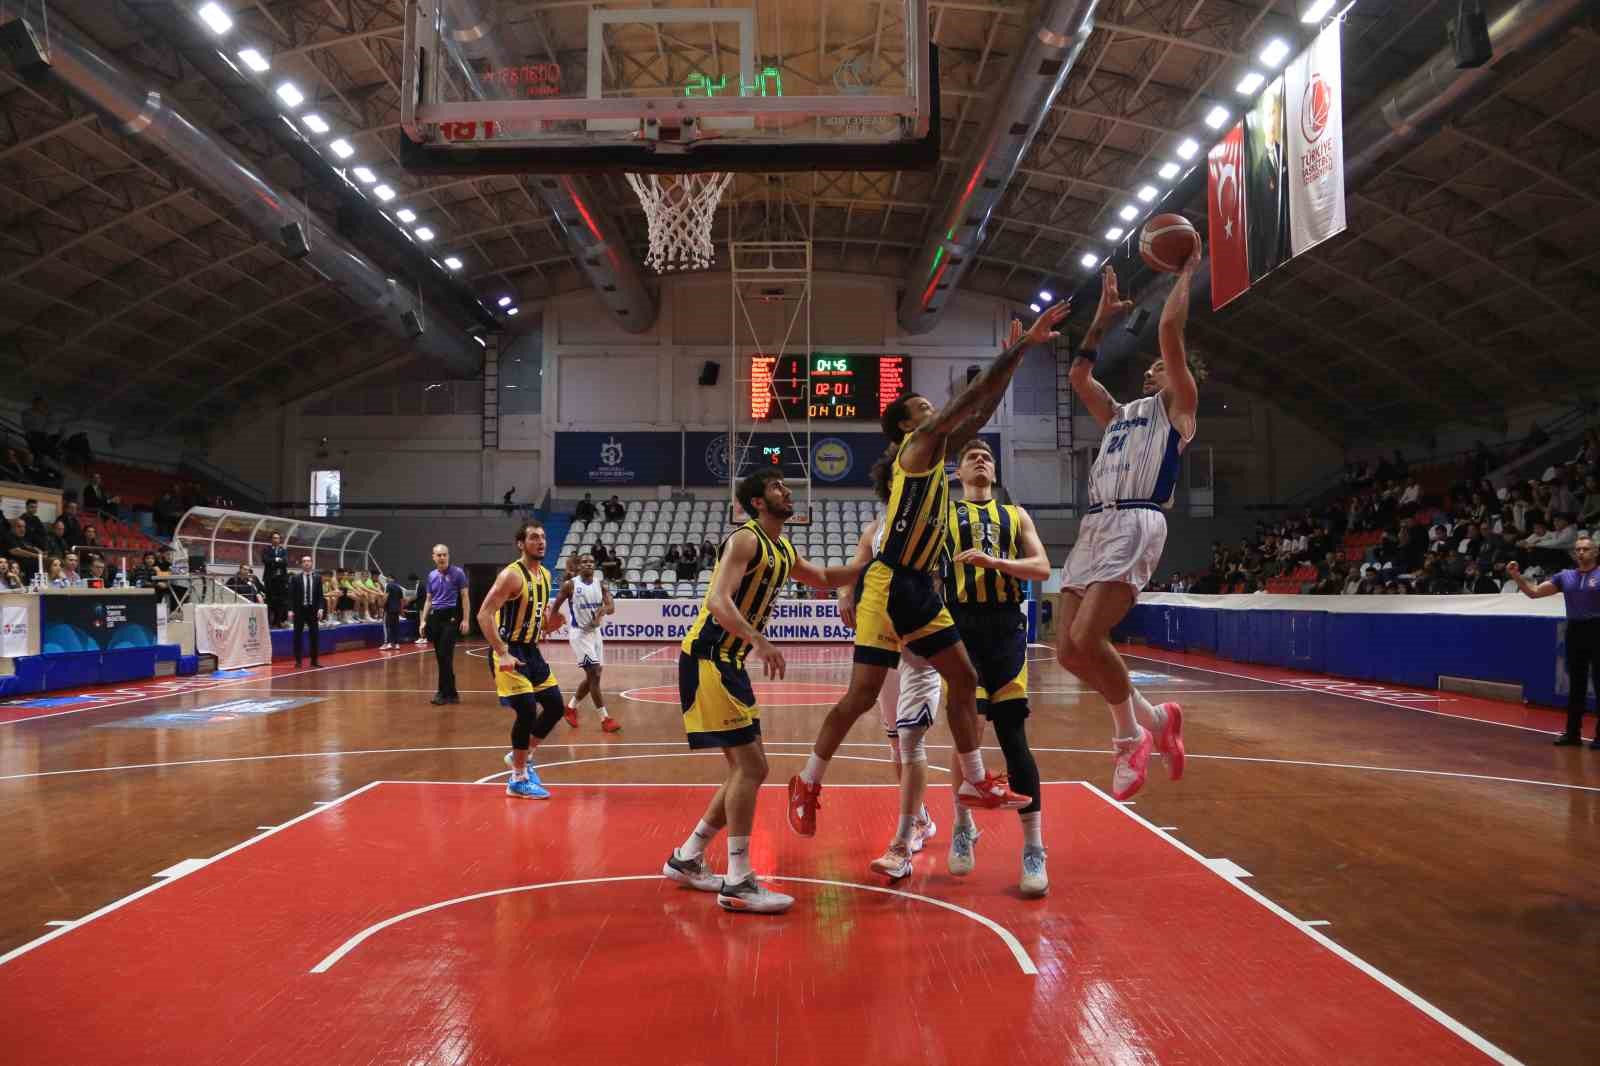 Türkiye Basketbol Ligi: Kocaeli BŞB Kağıtspor: 75 - Fenerbahçe Koleji Novotel: 83
